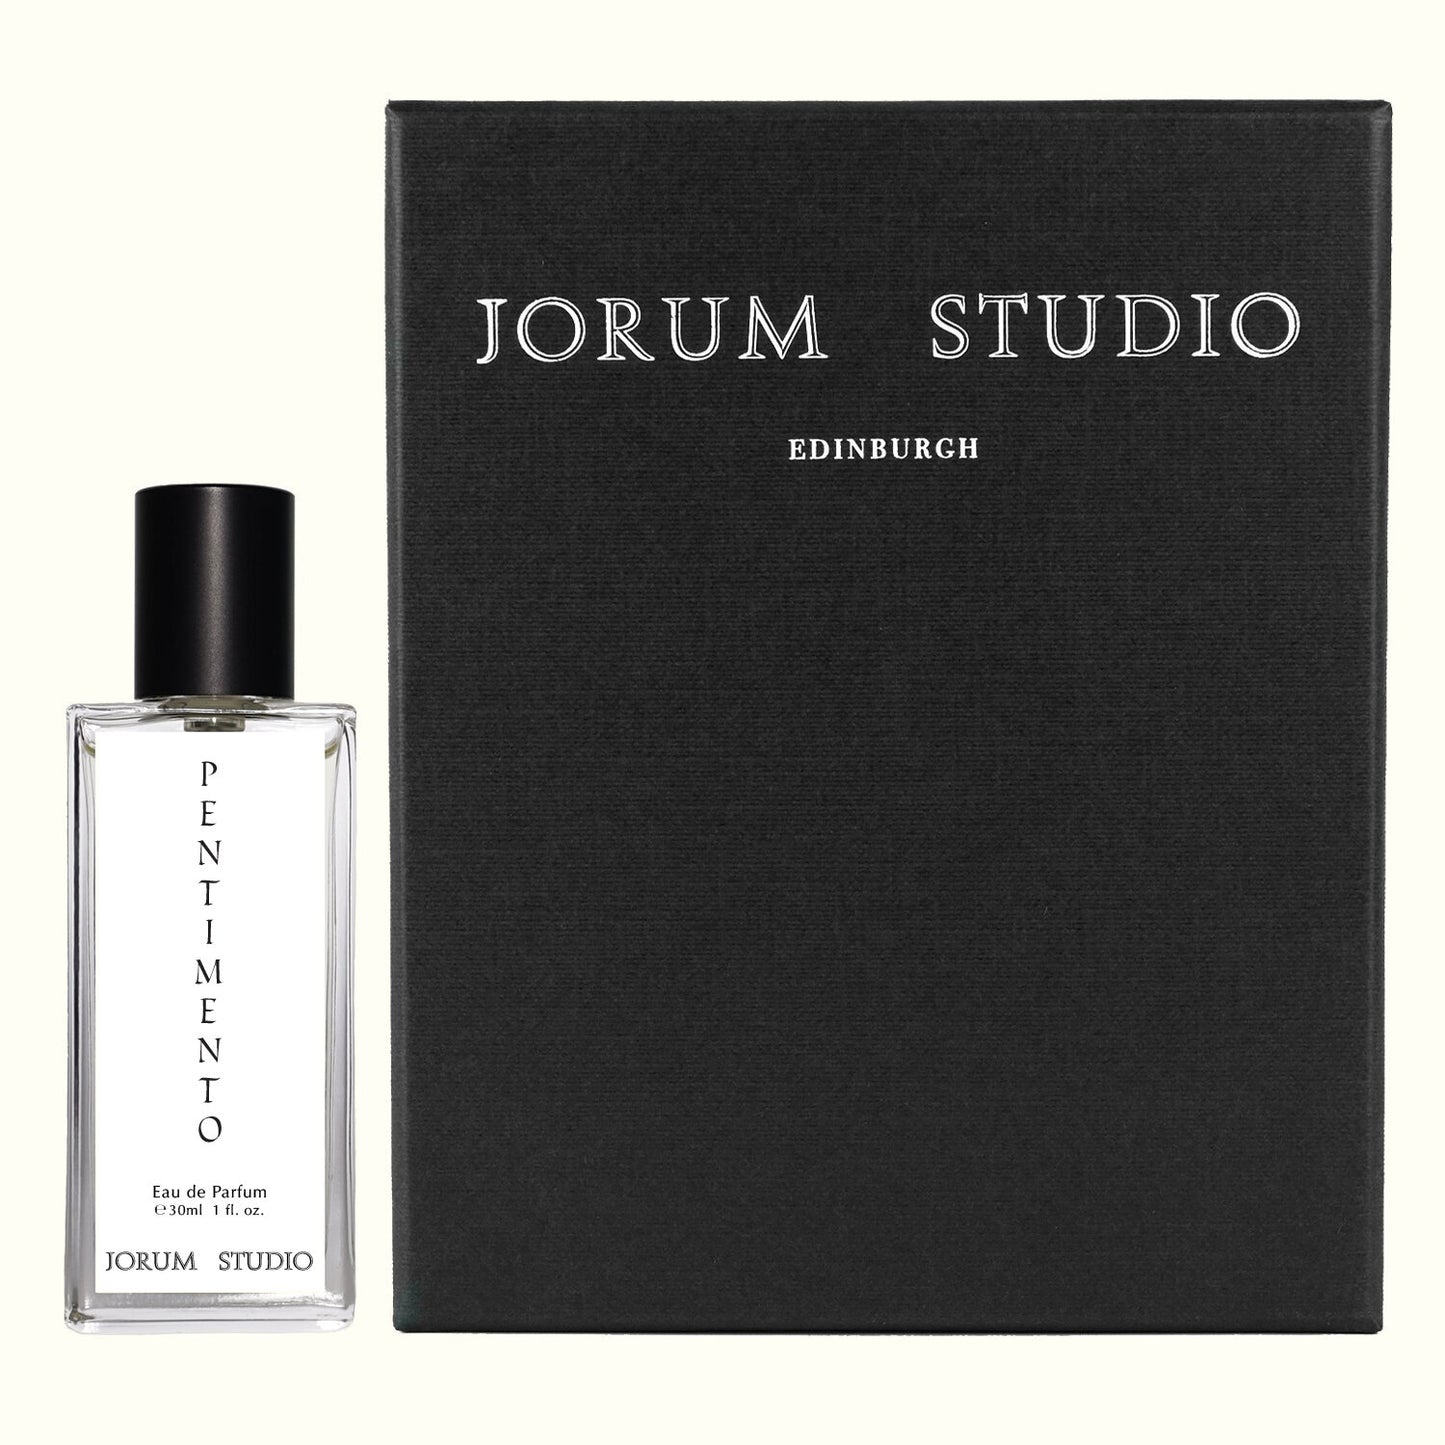 Jorum Studio Eau de Parfum - Pentimento